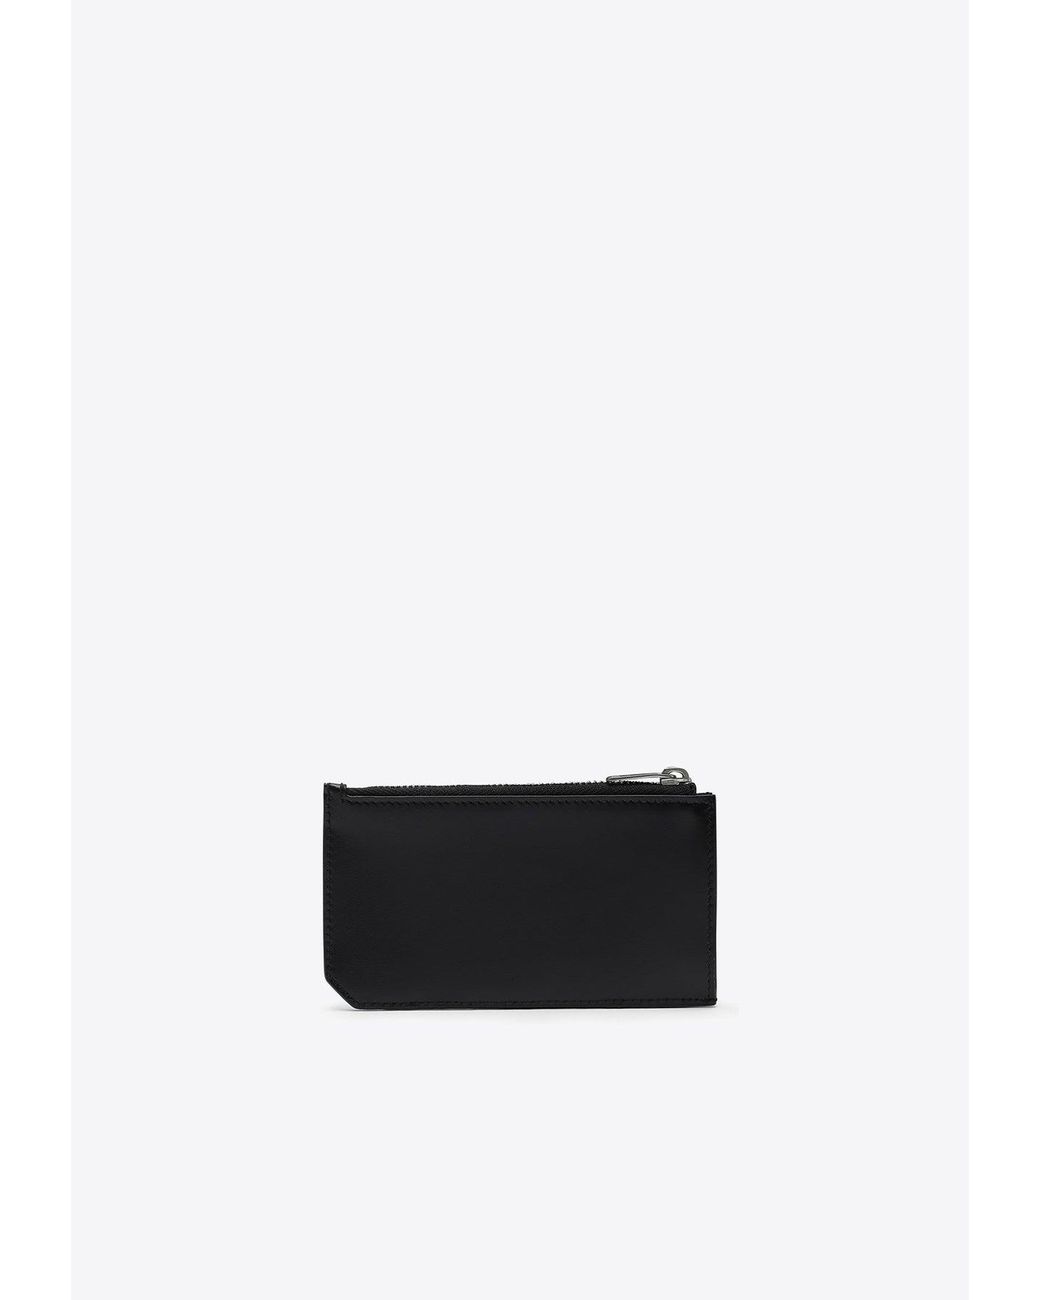 Tiny Cassandre Zipped Cardholder in Black - Saint Laurent